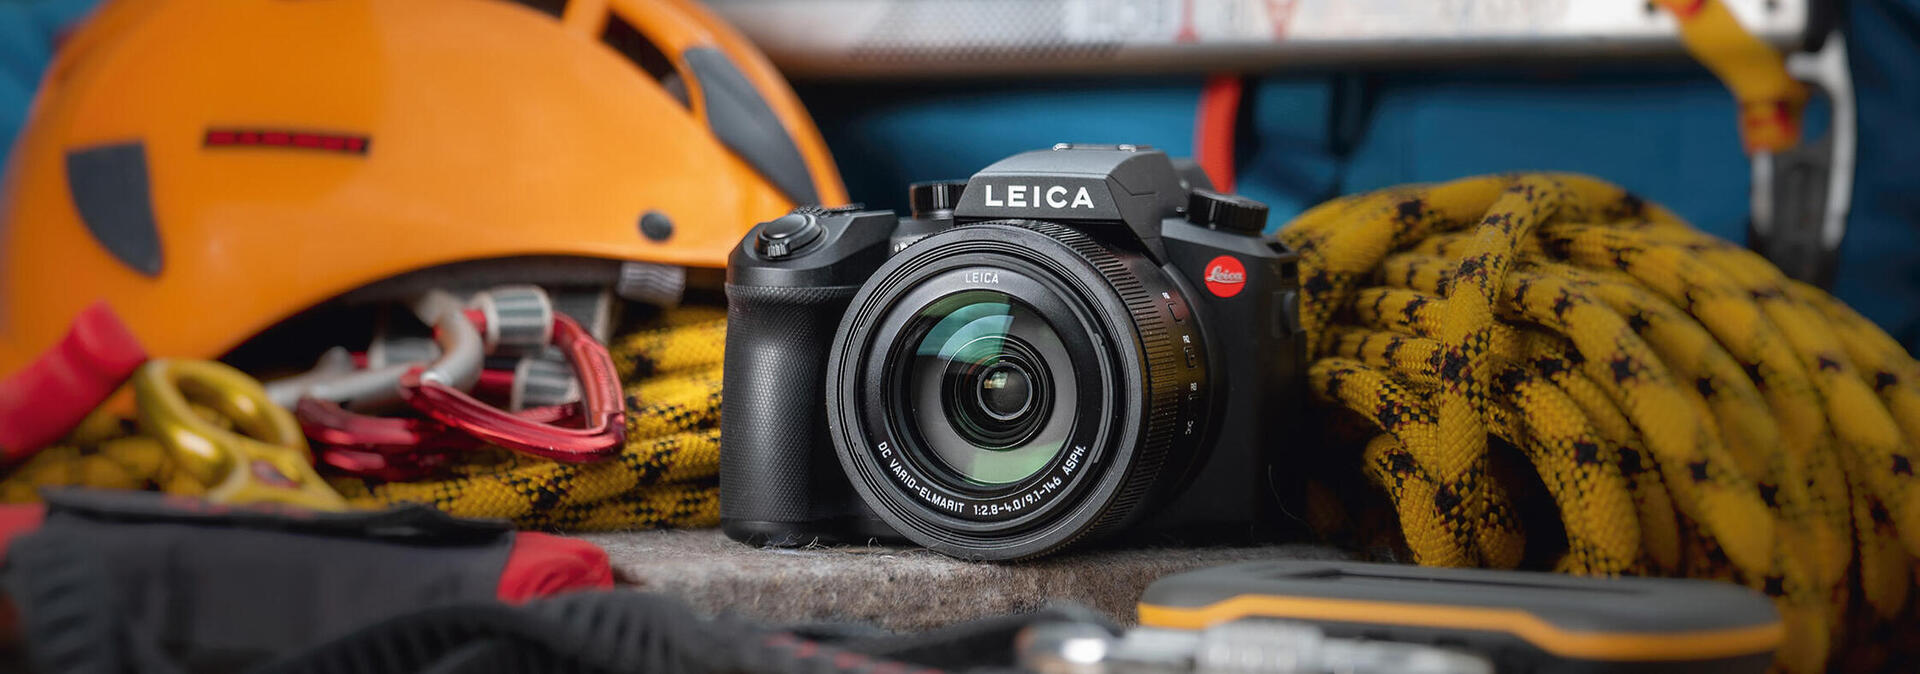 ライカV-LUX 5 | Leica Camera JP